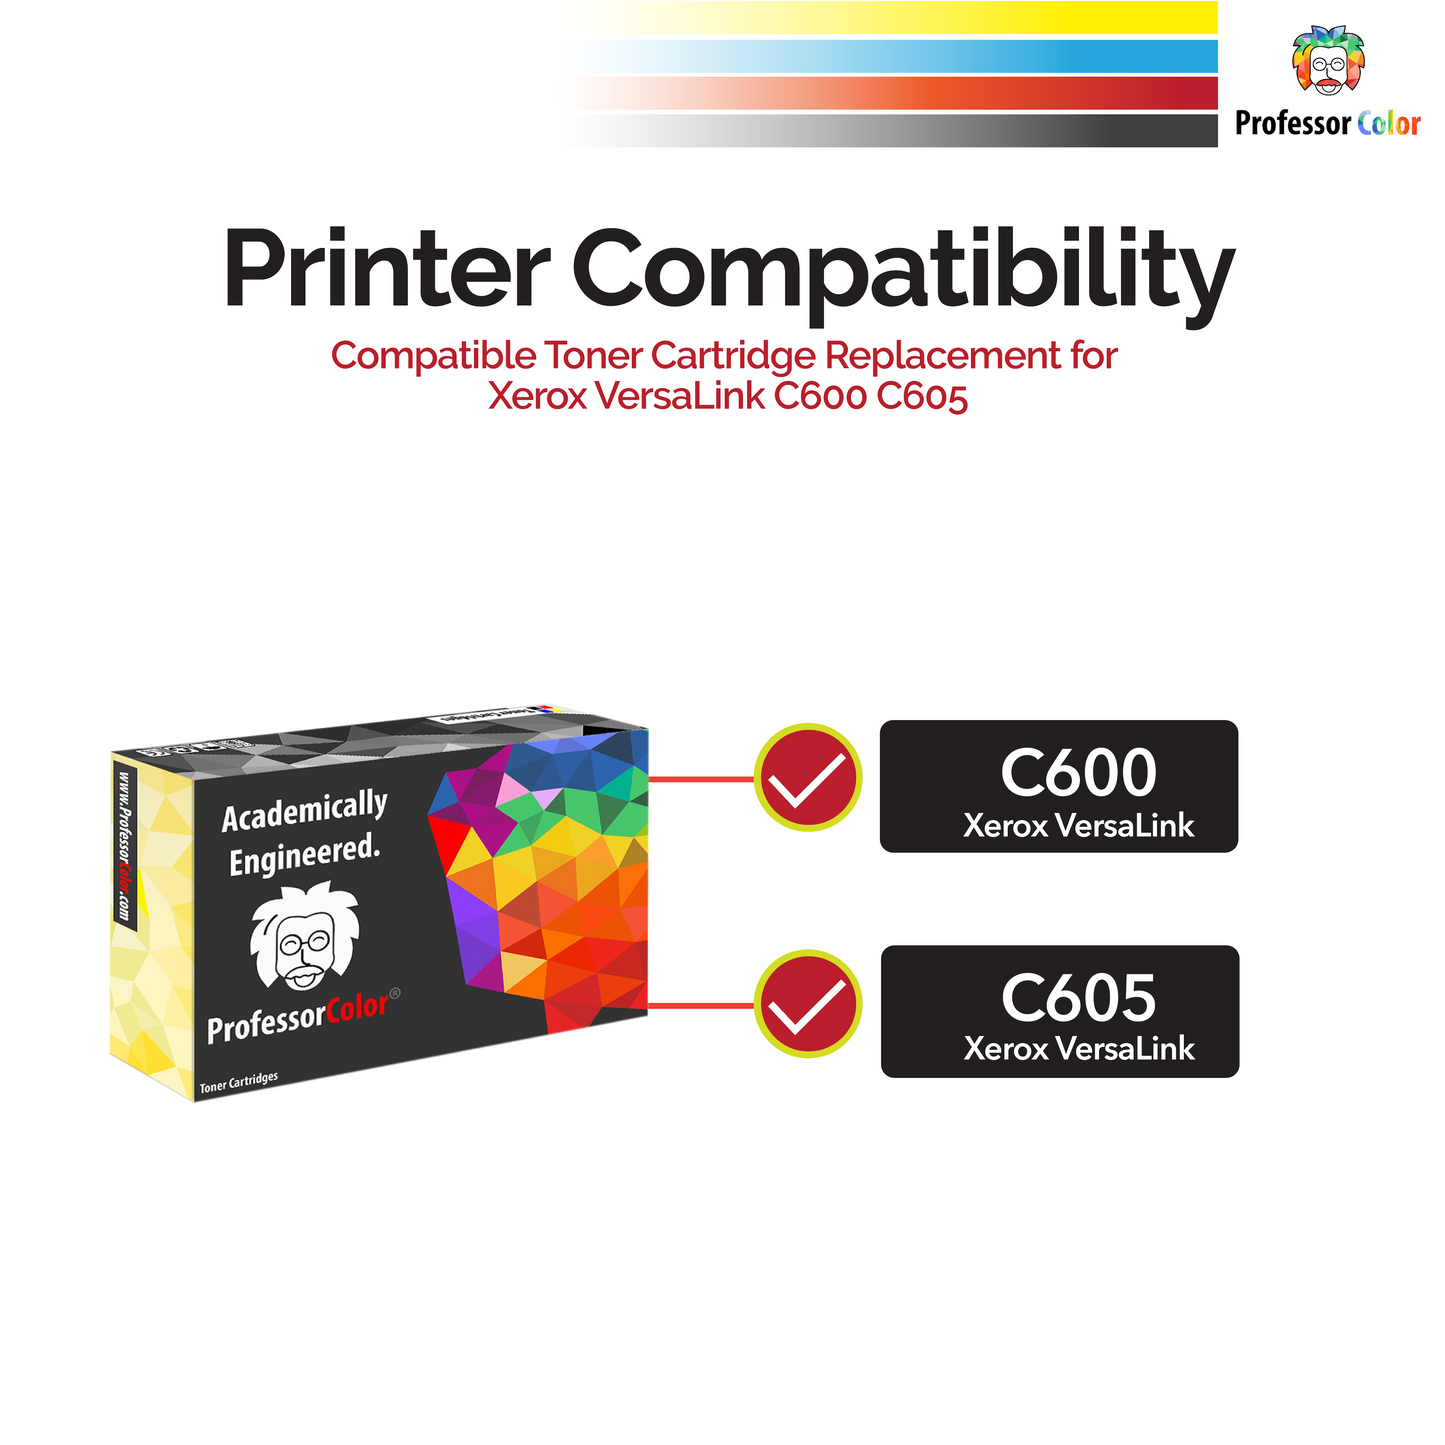 Professor Color Compatible Toner Cartridge Replacement for Xerox VersaLink C600 C605 106R03900 - Cyan - Professor Color